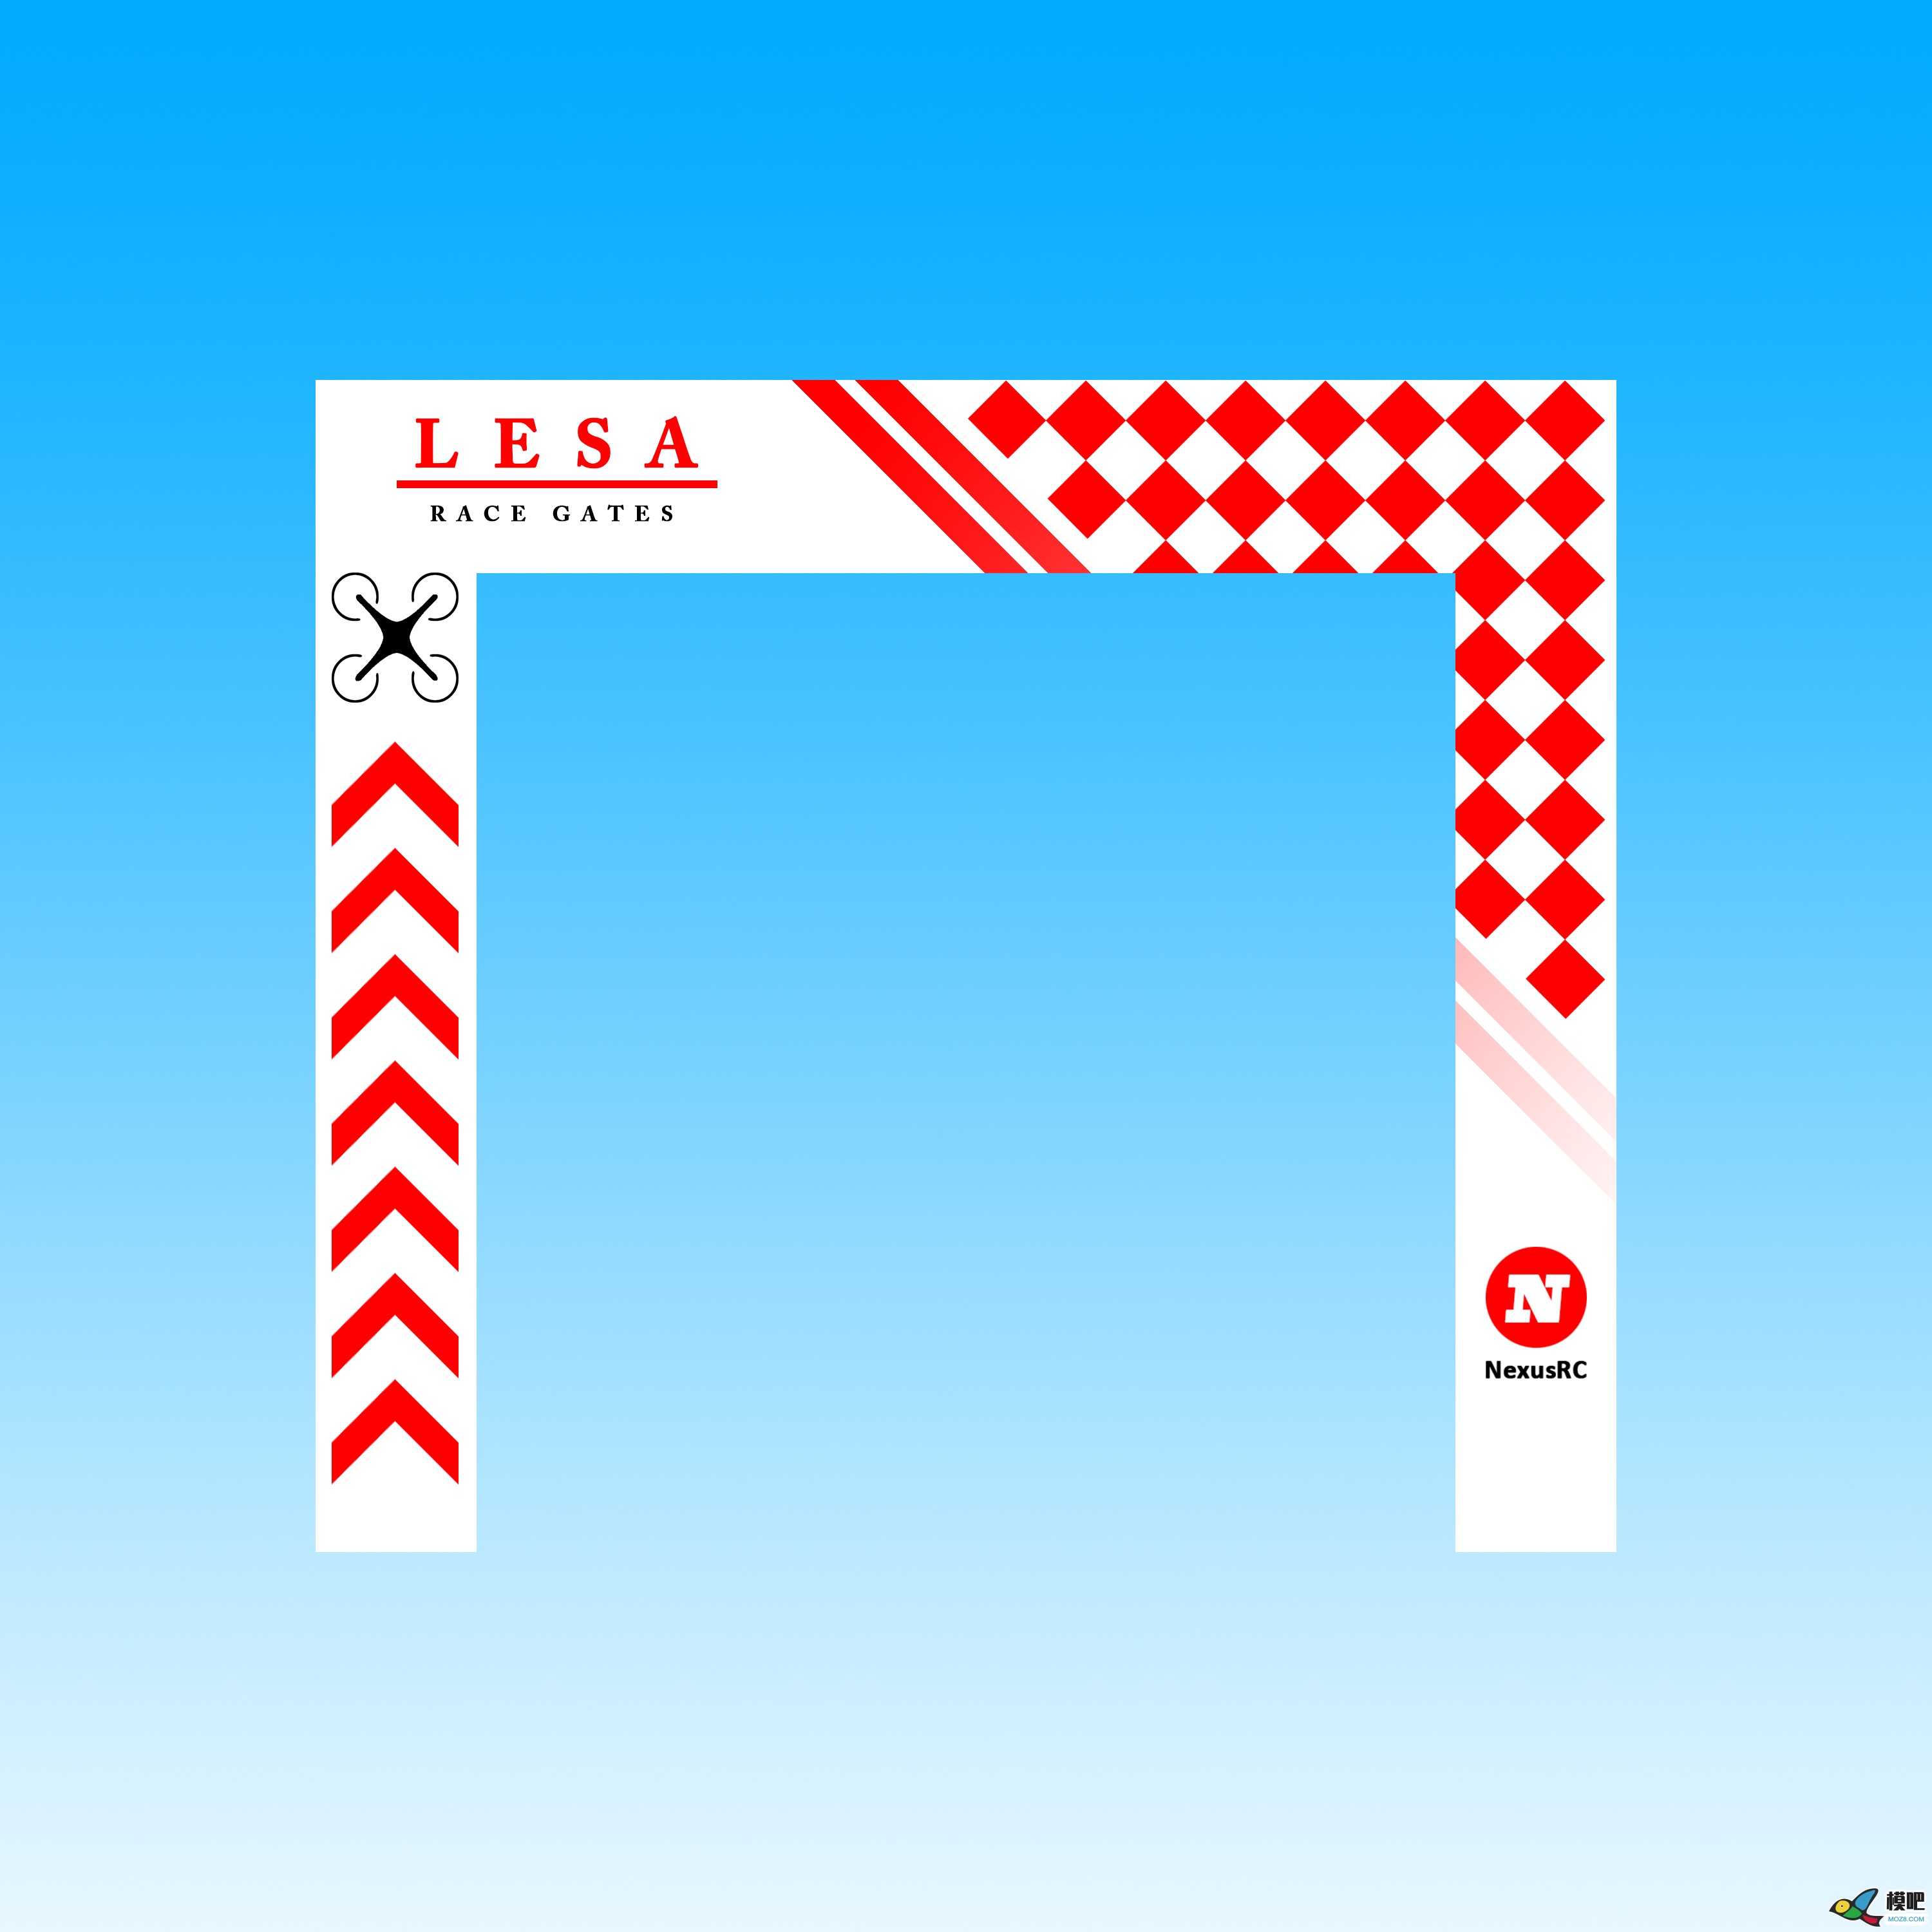 2020年第五期免费送模型：LESA无人机穿越门图案设计大赛 免费送模型,穿越机大门,穿越机旗帜,lesa 作者:keli898 5478 